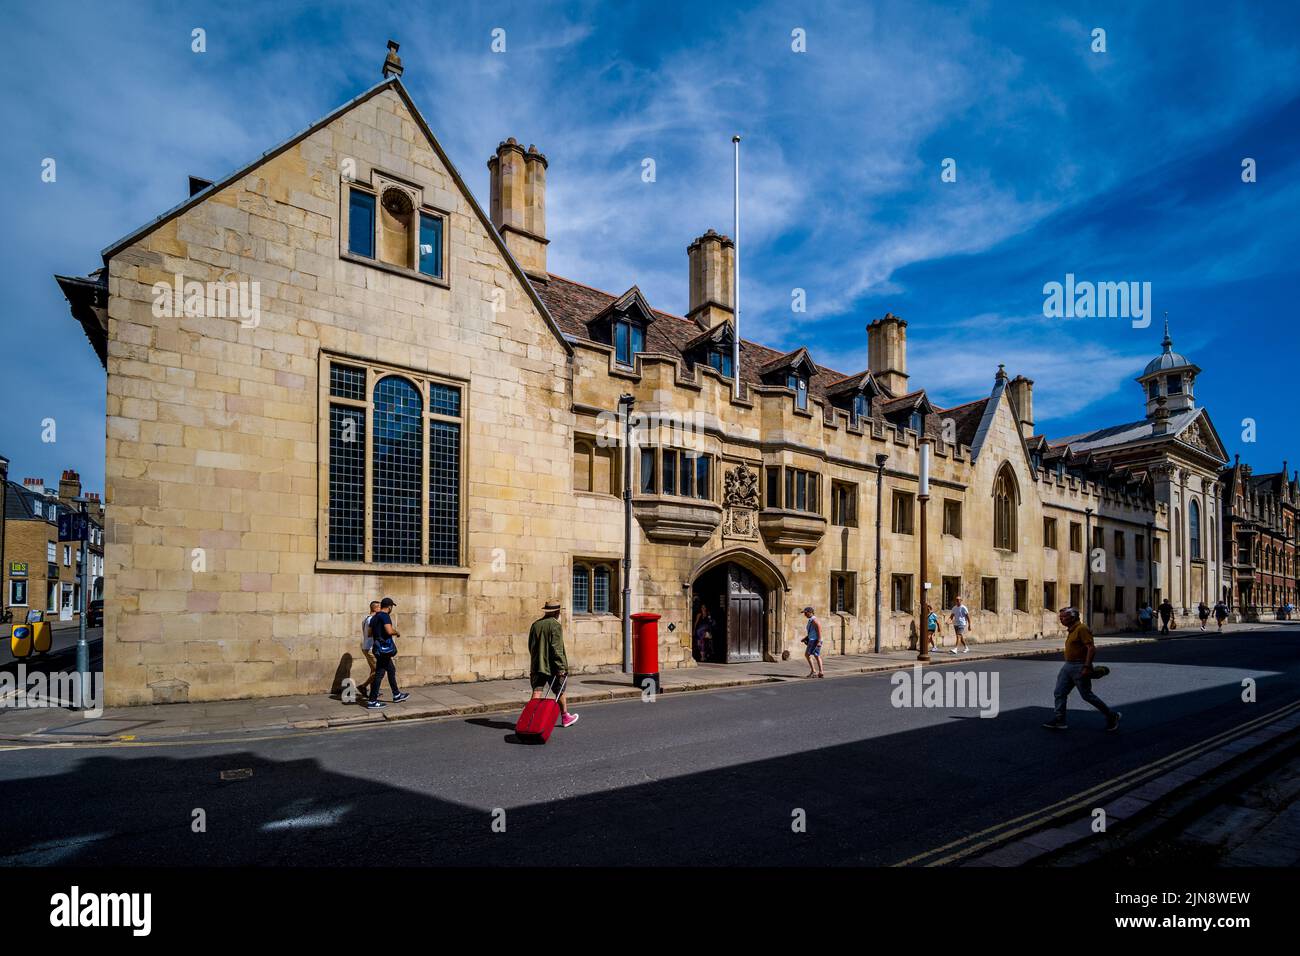 Pembroke College, University of Cambridge Haupteingang - Außenansicht des Pembroke College die Cambridge University, gegründet 1347, im Zentrum von Cambridge, Großbritannien Stockfoto